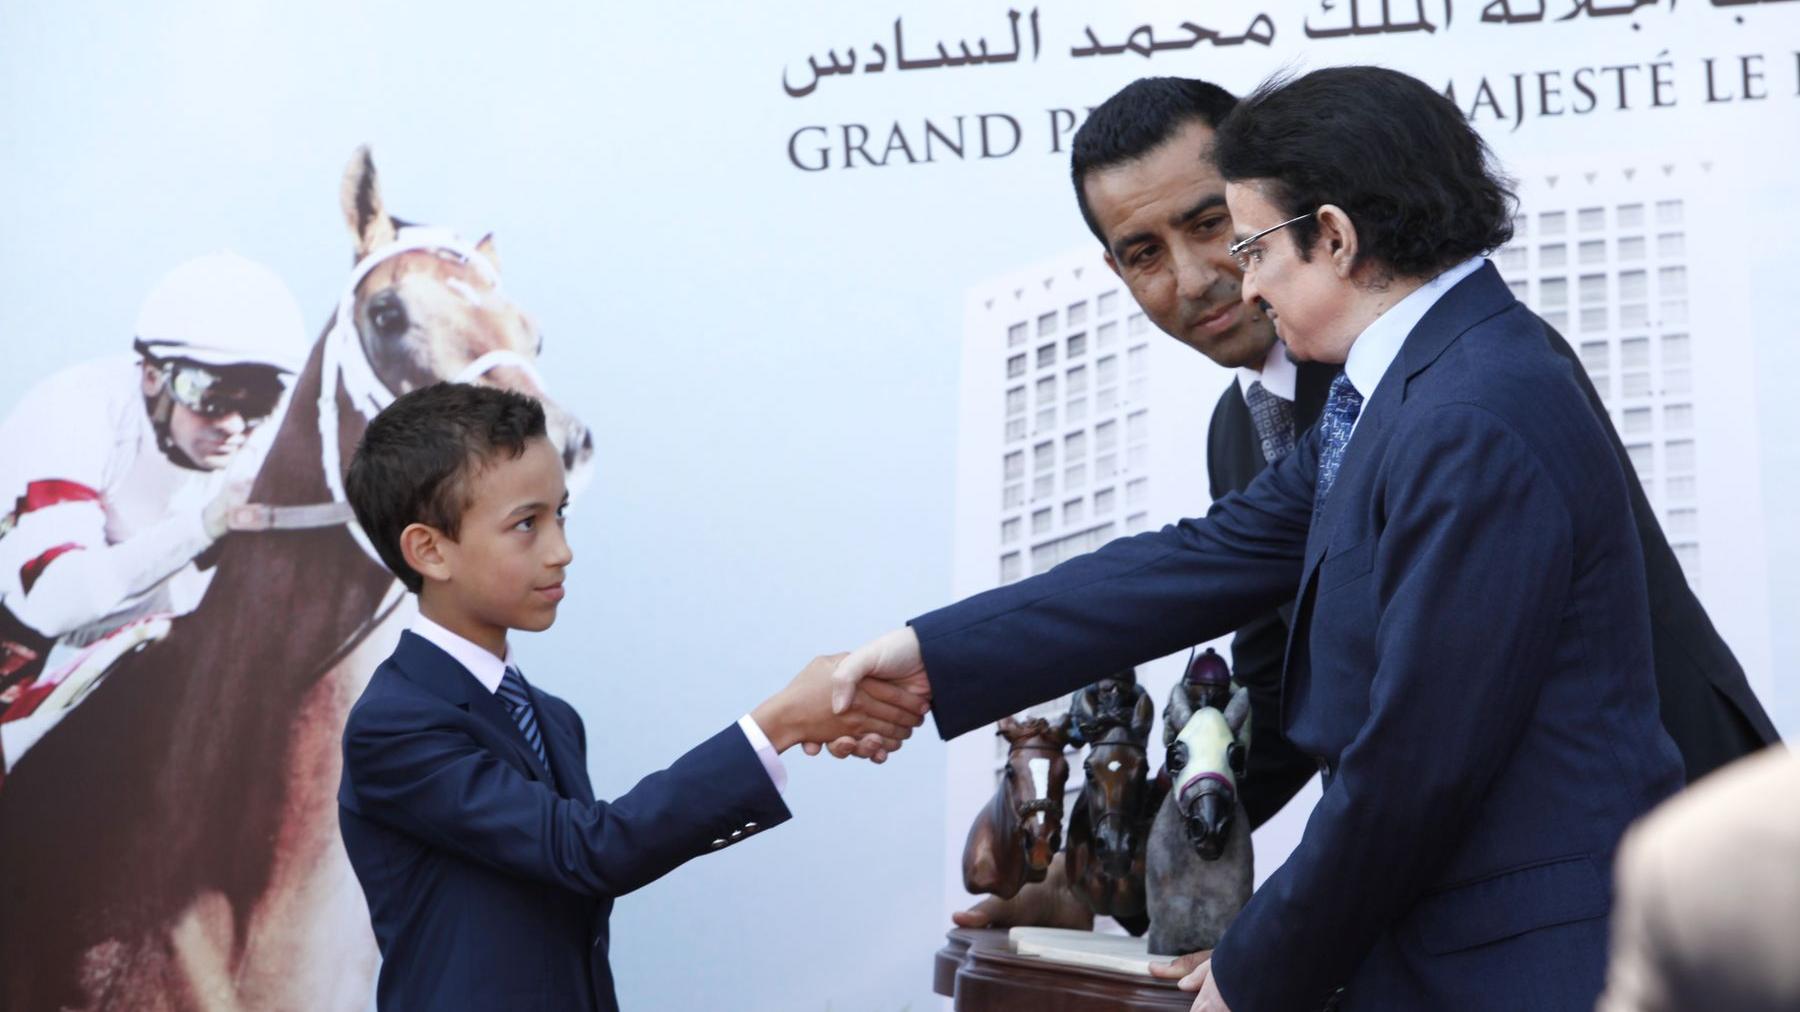 Le prince Héritier Moulay Hassan remet "le grand prix de Sa Majesté le roi Mohammed VI" au directeur de l'écurie Al Khalidiah, Sheikh Mutlaq Bin Mashref.
